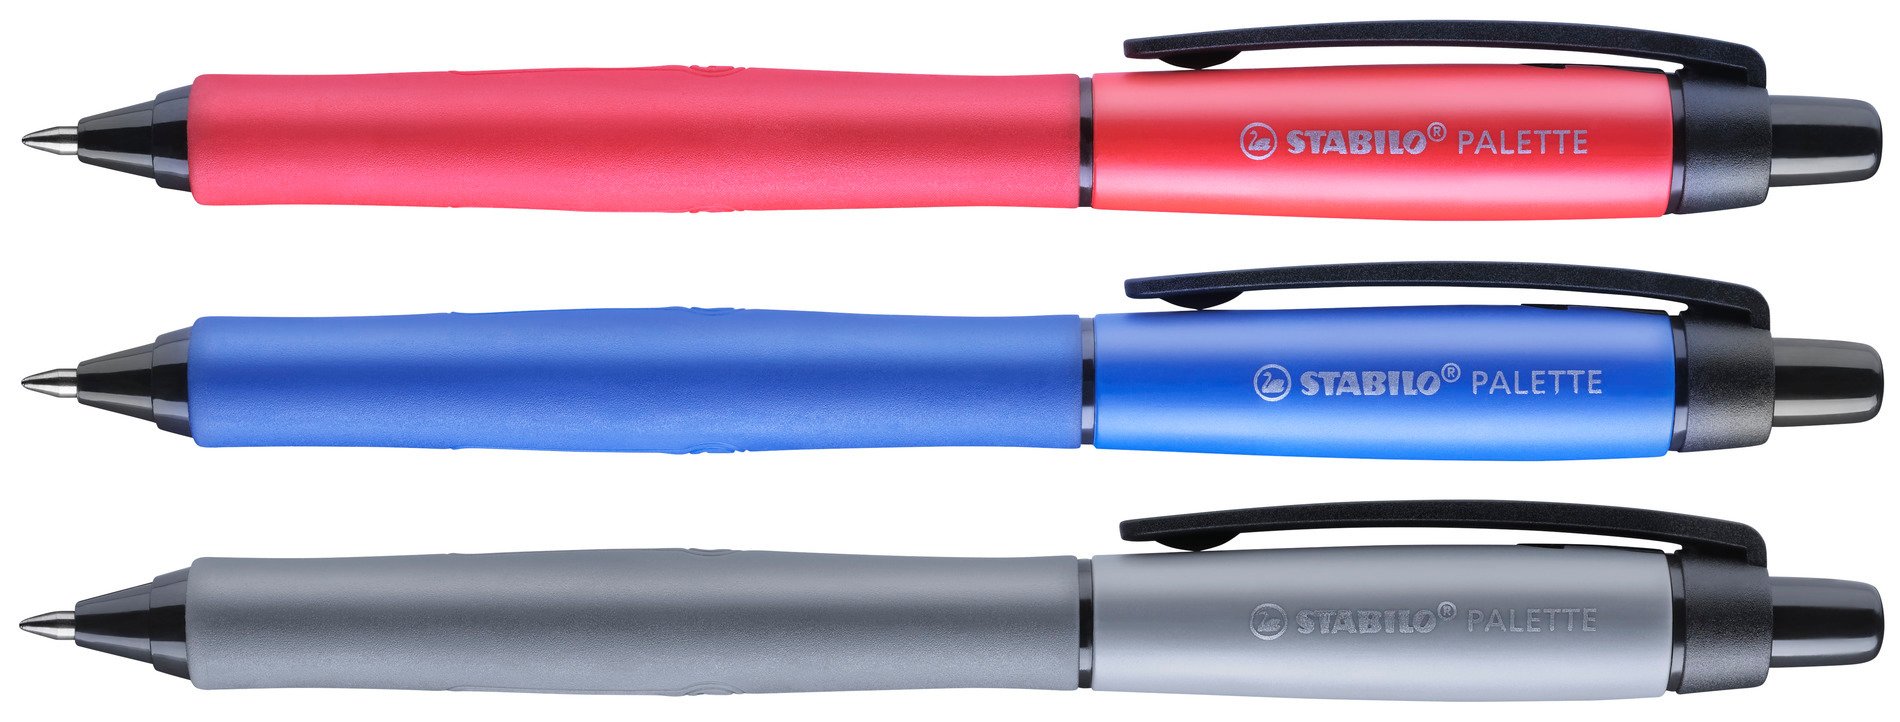 Gel Pen Stabilo, Stabilo Pens Black, Pen Stabilo 0.4mm